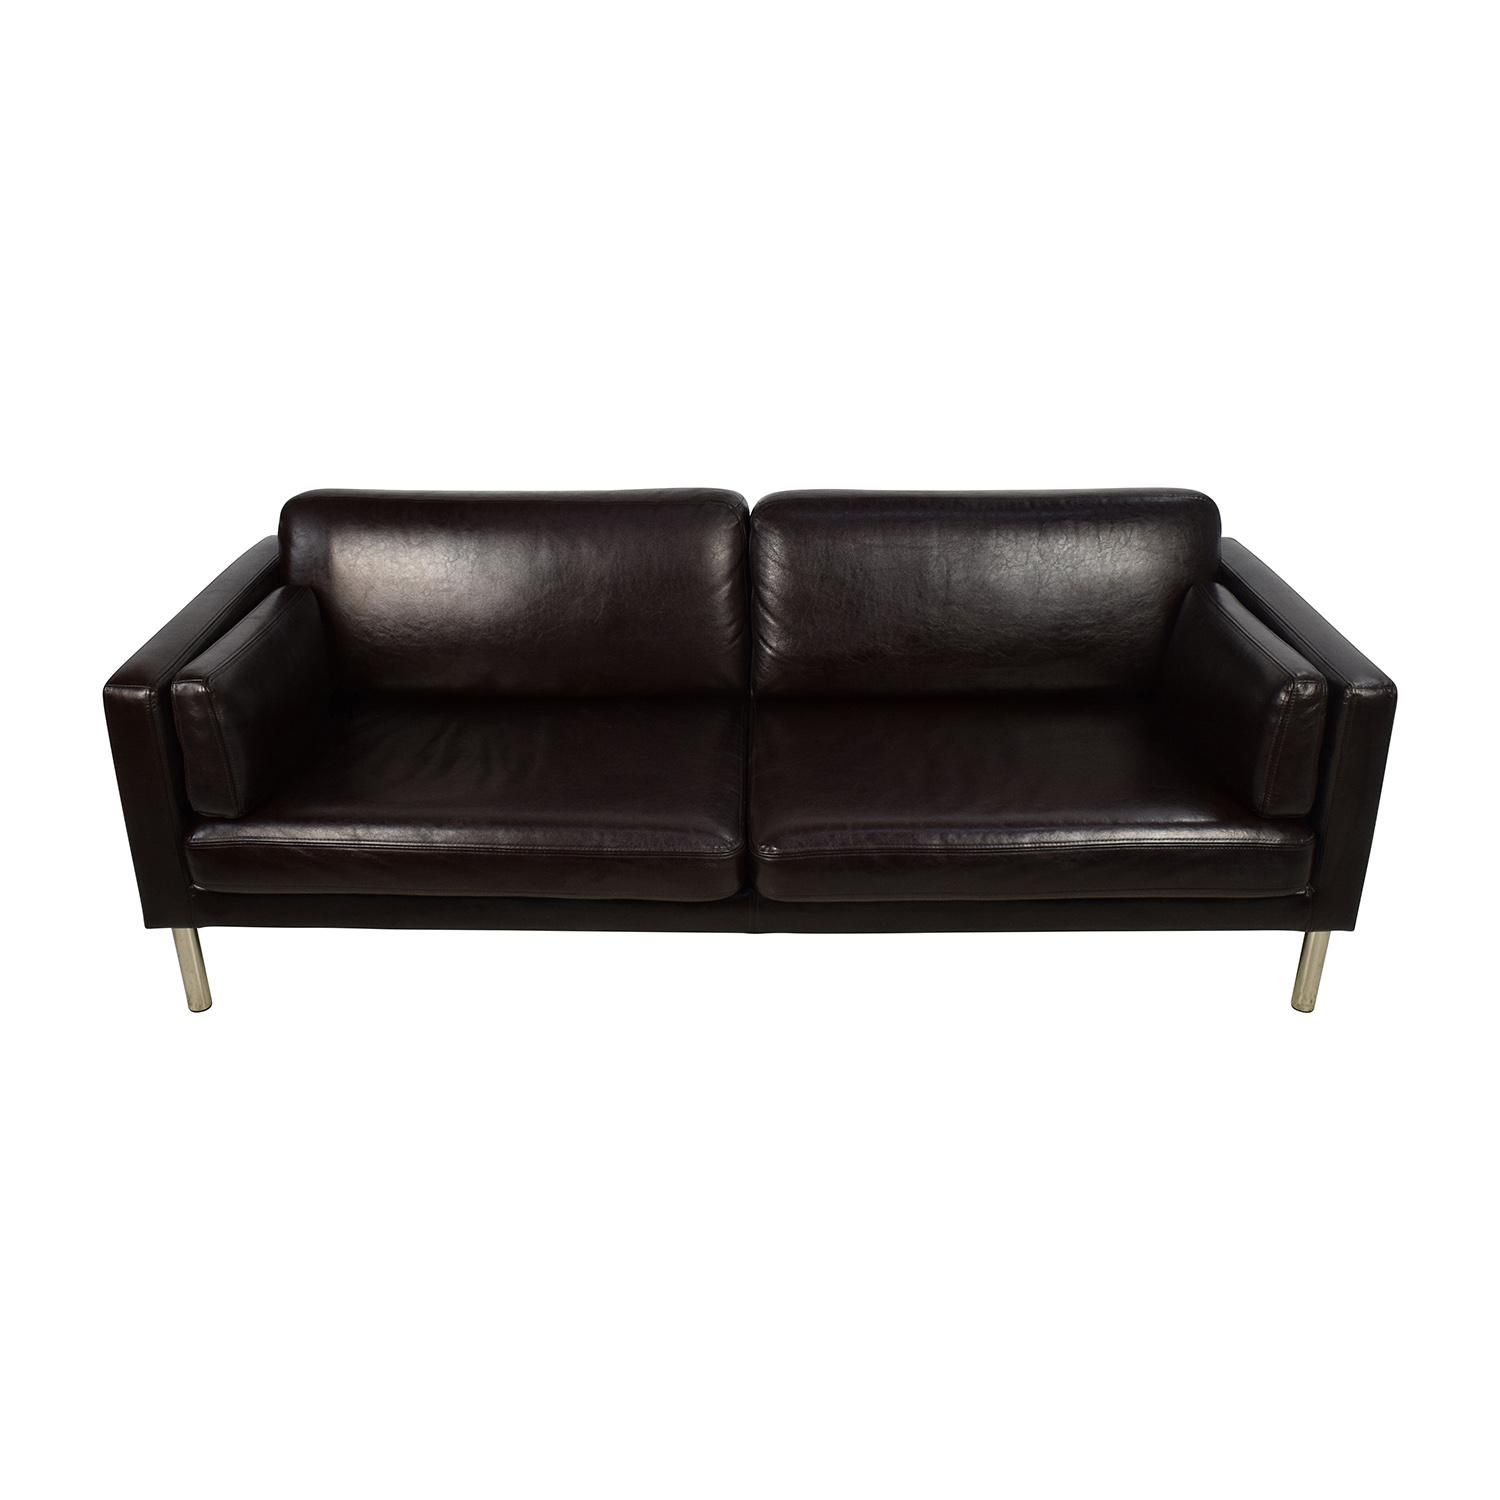 30% Off – Nicoletti Nicoletti Leather Green Sofa / Sofas Throughout Sofas With Chrome Legs (View 4 of 20)